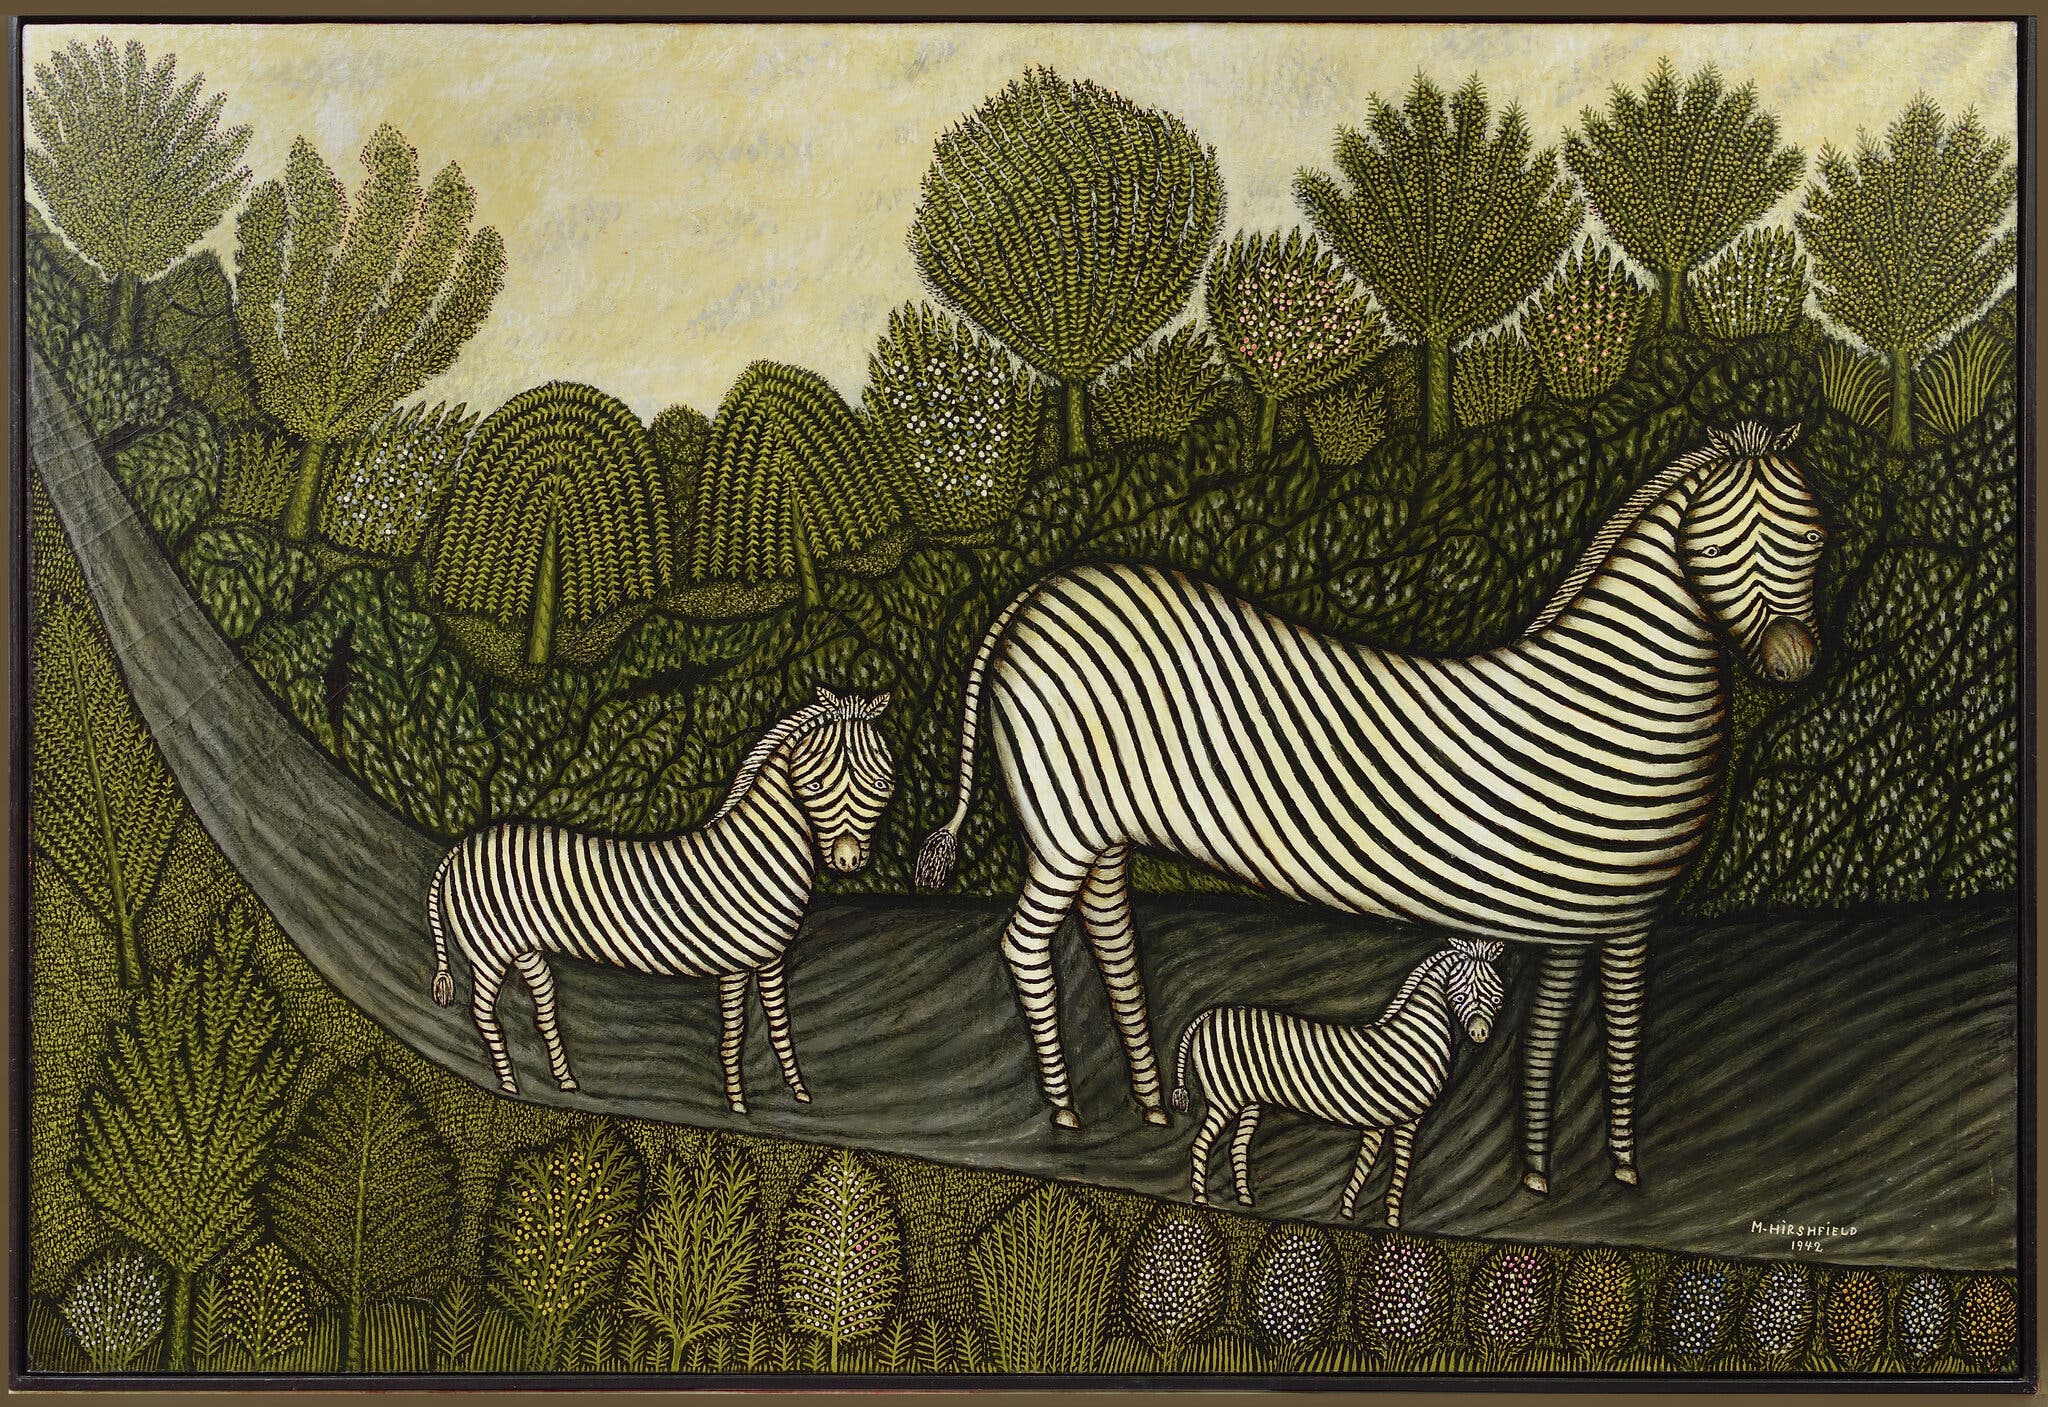 Famiglia di zebre by Morris Hirshfield - 1942 collezione privata